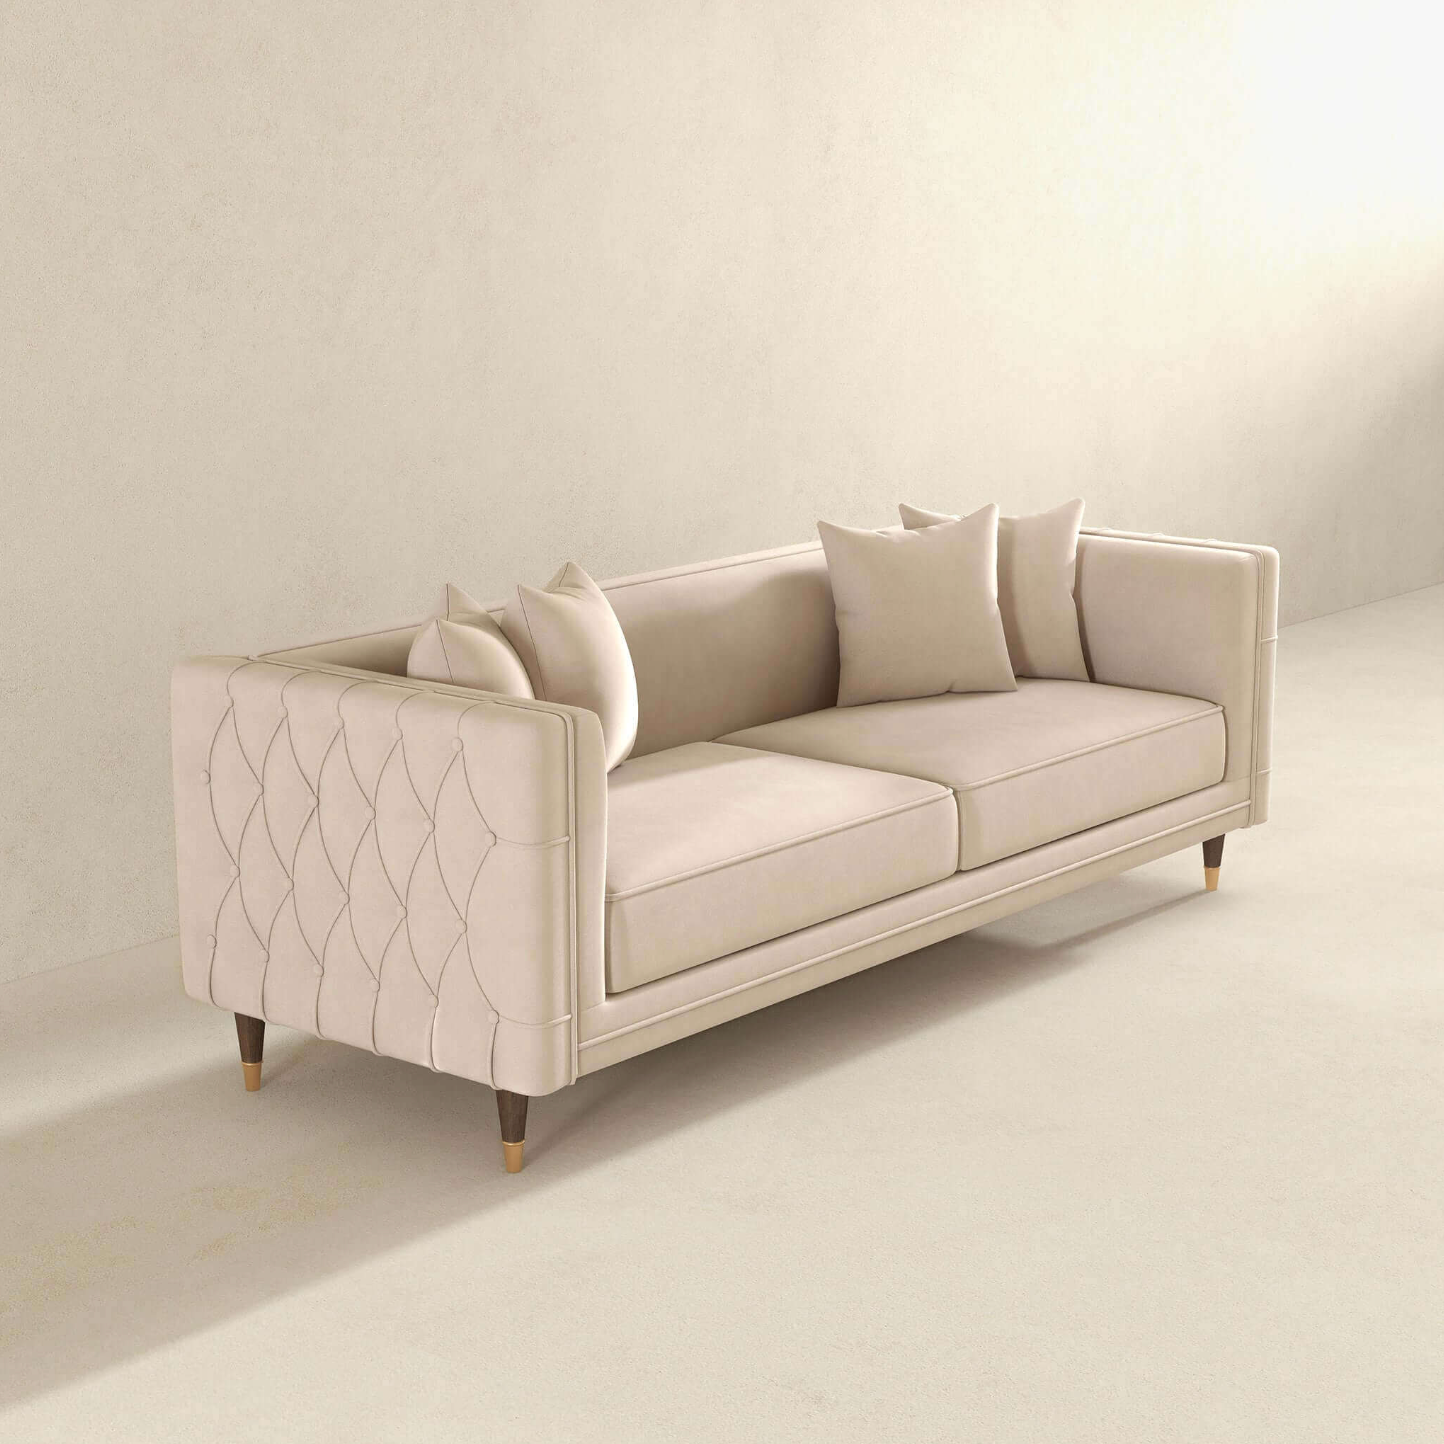 Edward MCM Elegant Tufted Velvet Sofa 90"